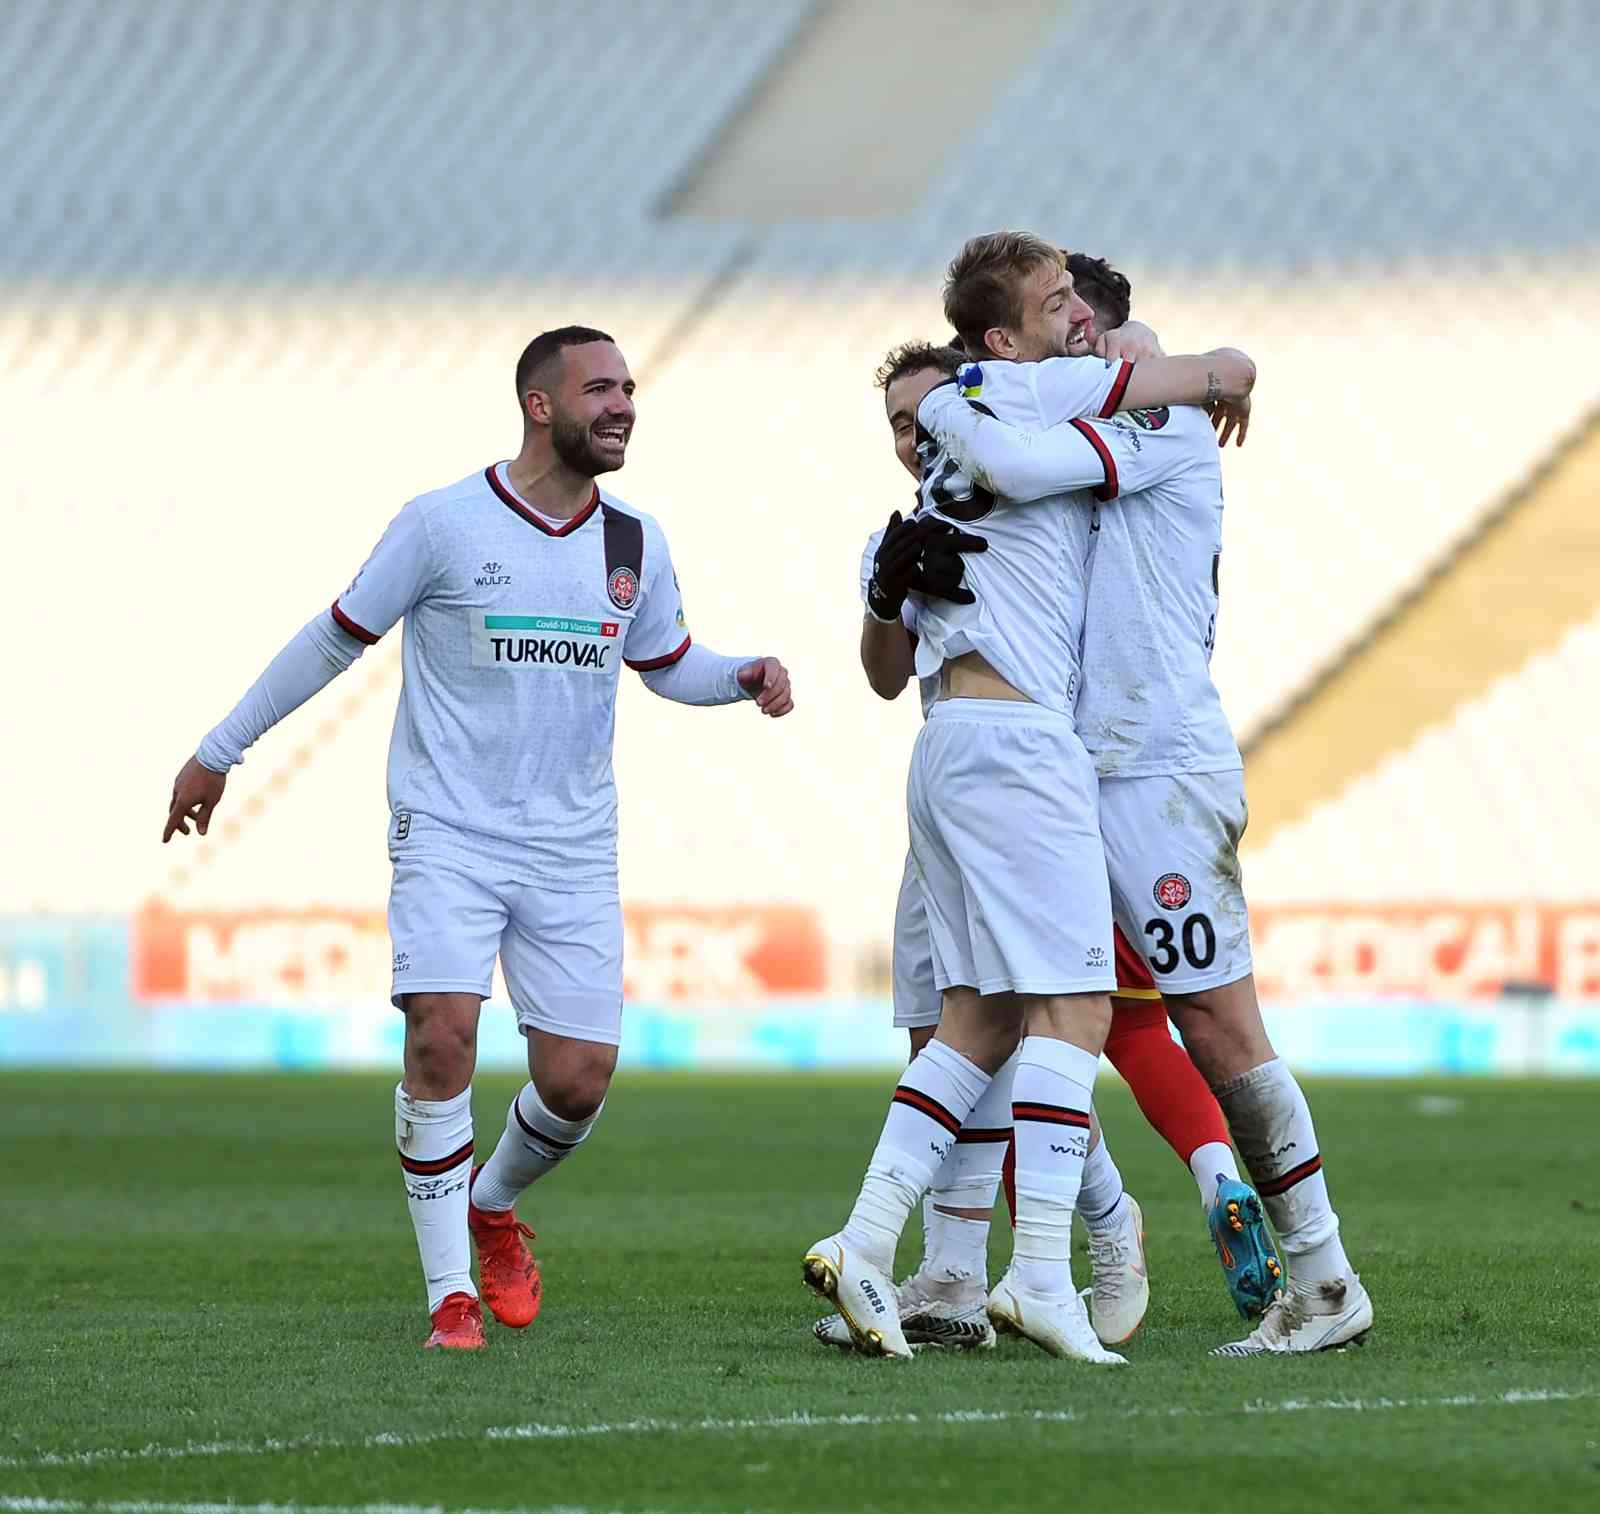 Spor Toto Süper Lig: Fatih Karagümrük: 1 - Yeni Malatyaspor: 0 (Maç sonucu) #istanbul